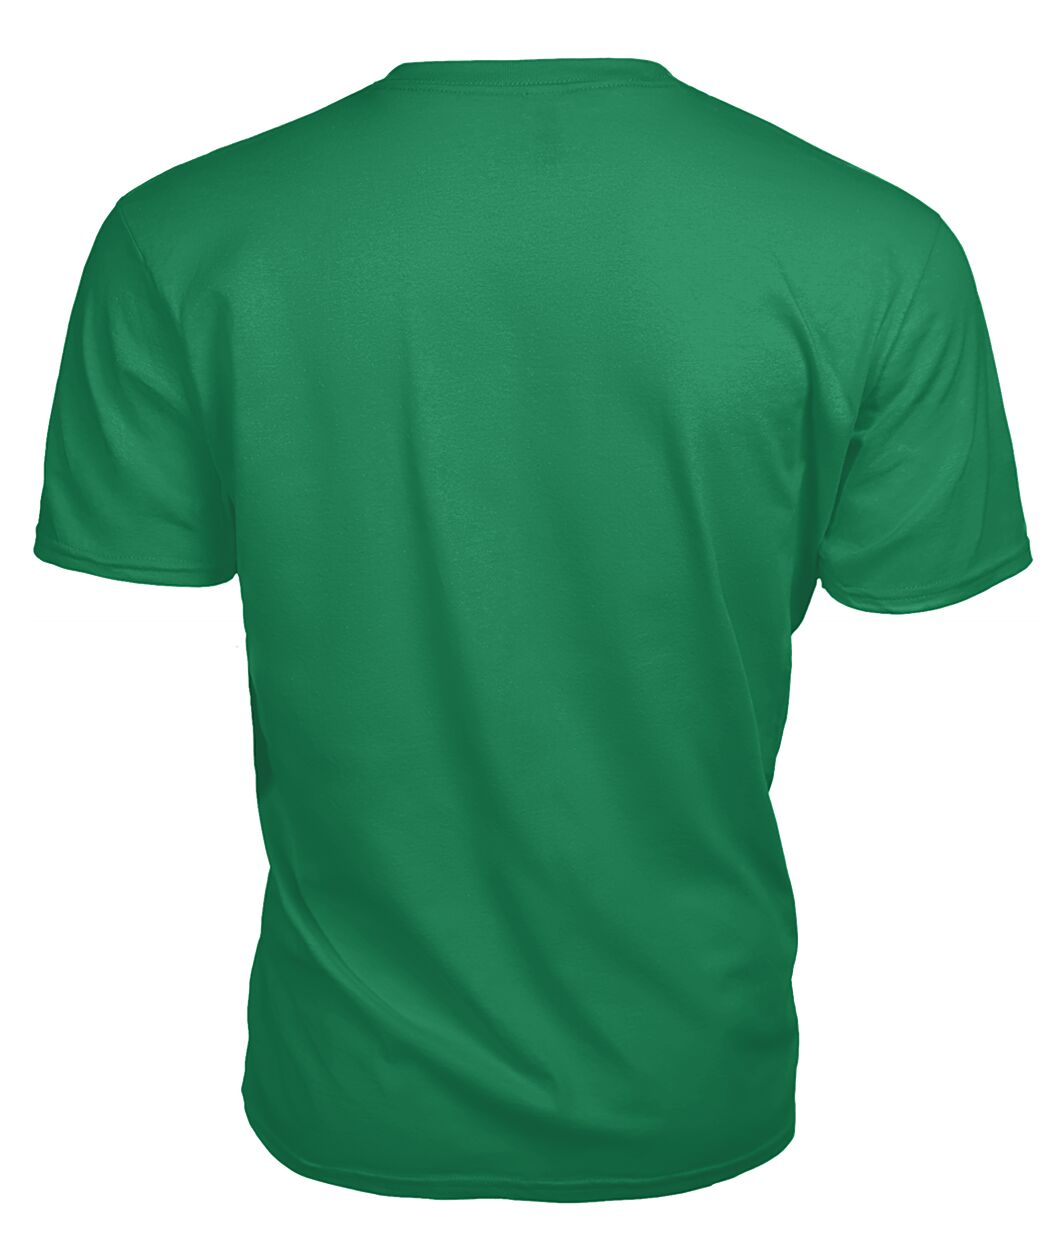 Spalding Family Tartan - 2D T-shirt